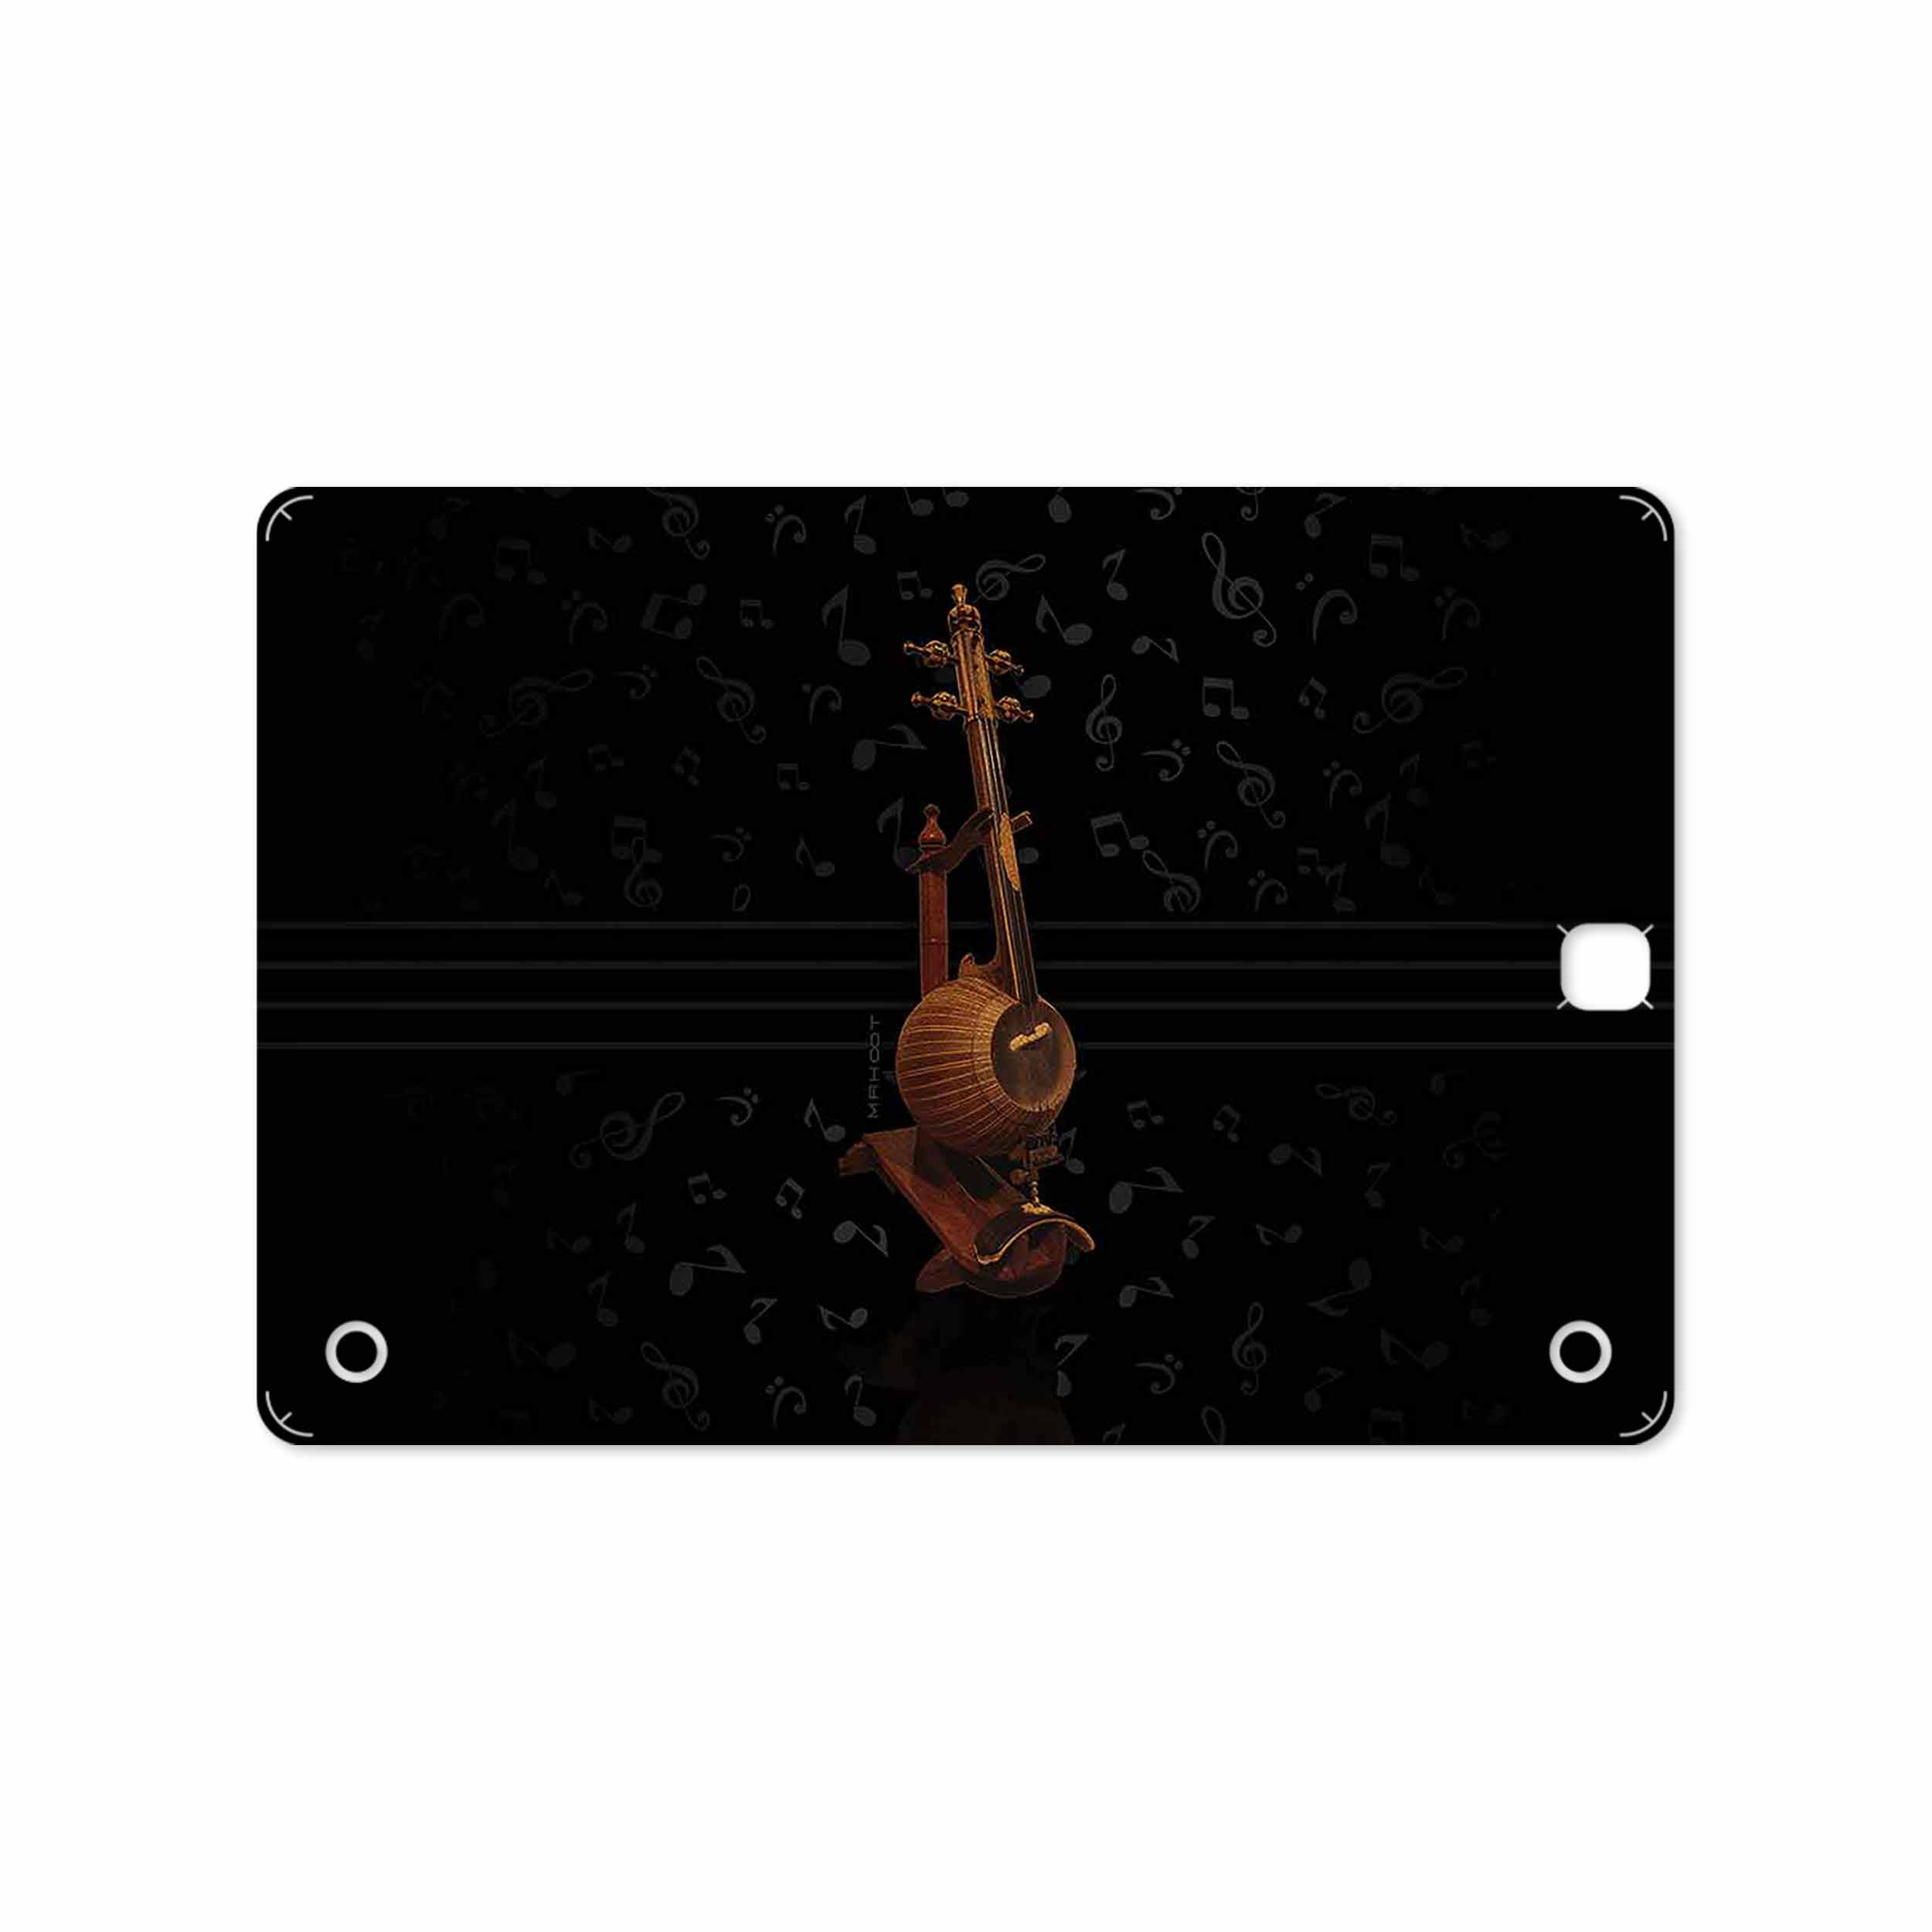 برچسب پوششی ماهوت مدل Persian Fiddle Instrument مناسب برای تبلت سامسونگ Galaxy Tab A 9.7 2015 T555